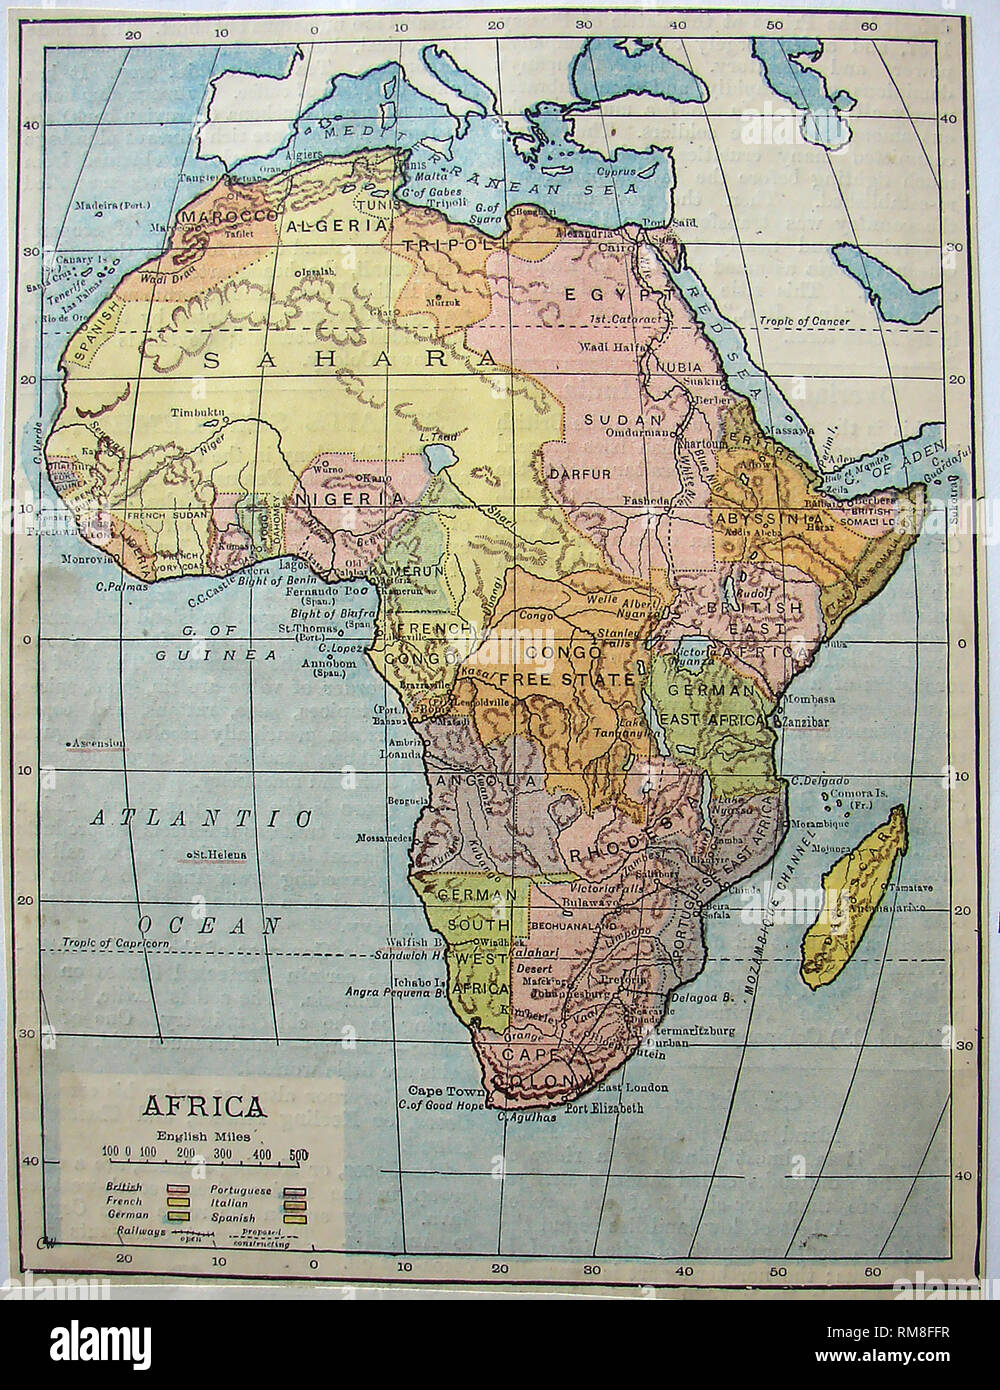 Farbigen Karte des afrikanischen Kontinents im Jahr 1901 zeigt die Namen der Länder, Grenzen, Territorien etc. Stockfoto